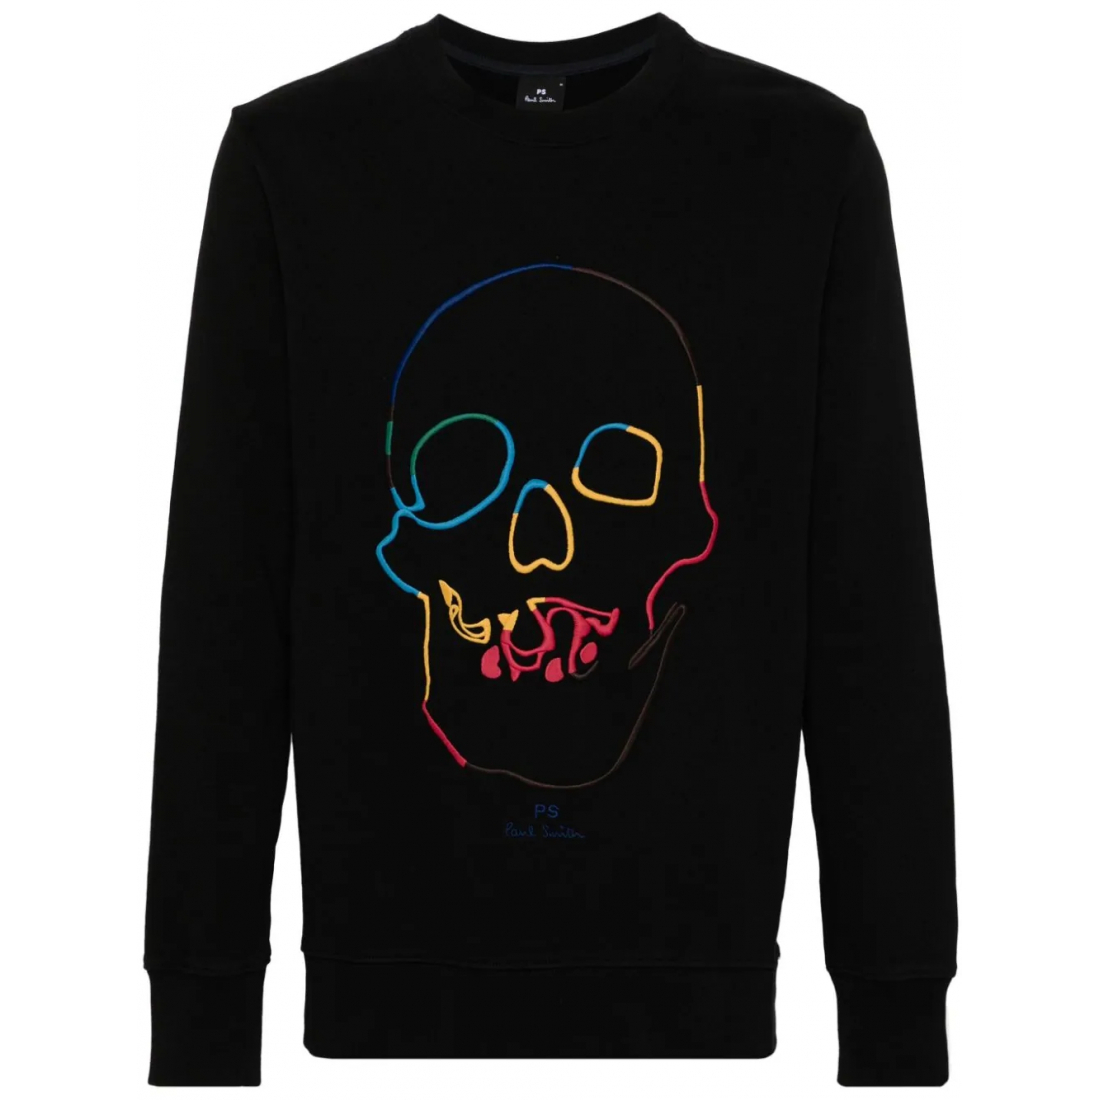 Men's 'Embroidered' Sweatshirt